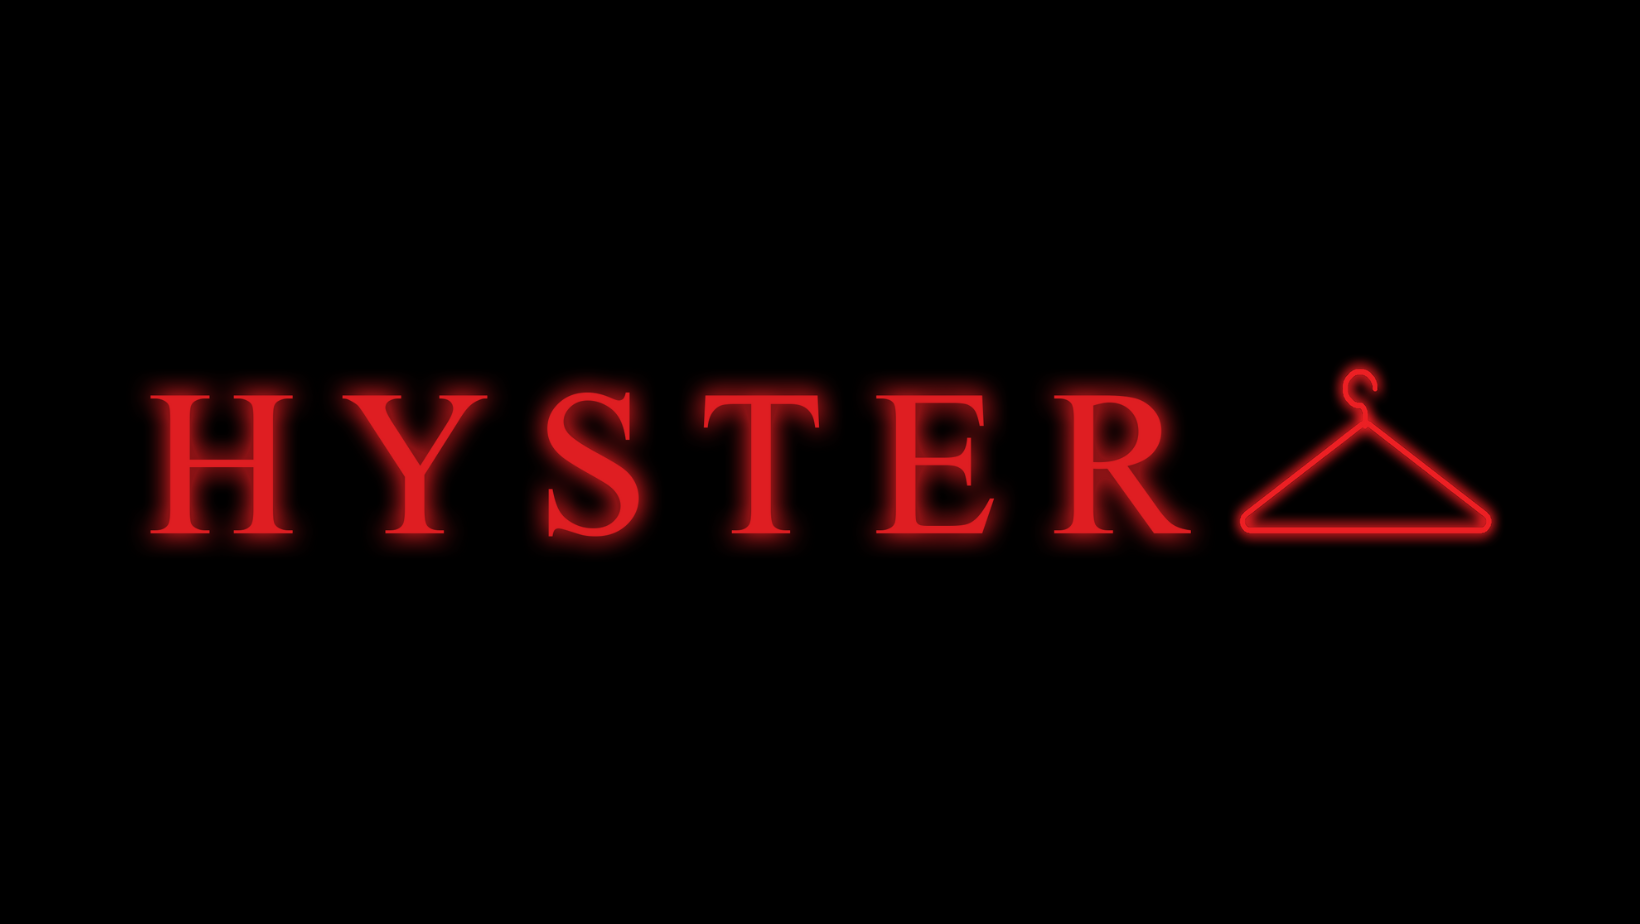 Hystera logo crni